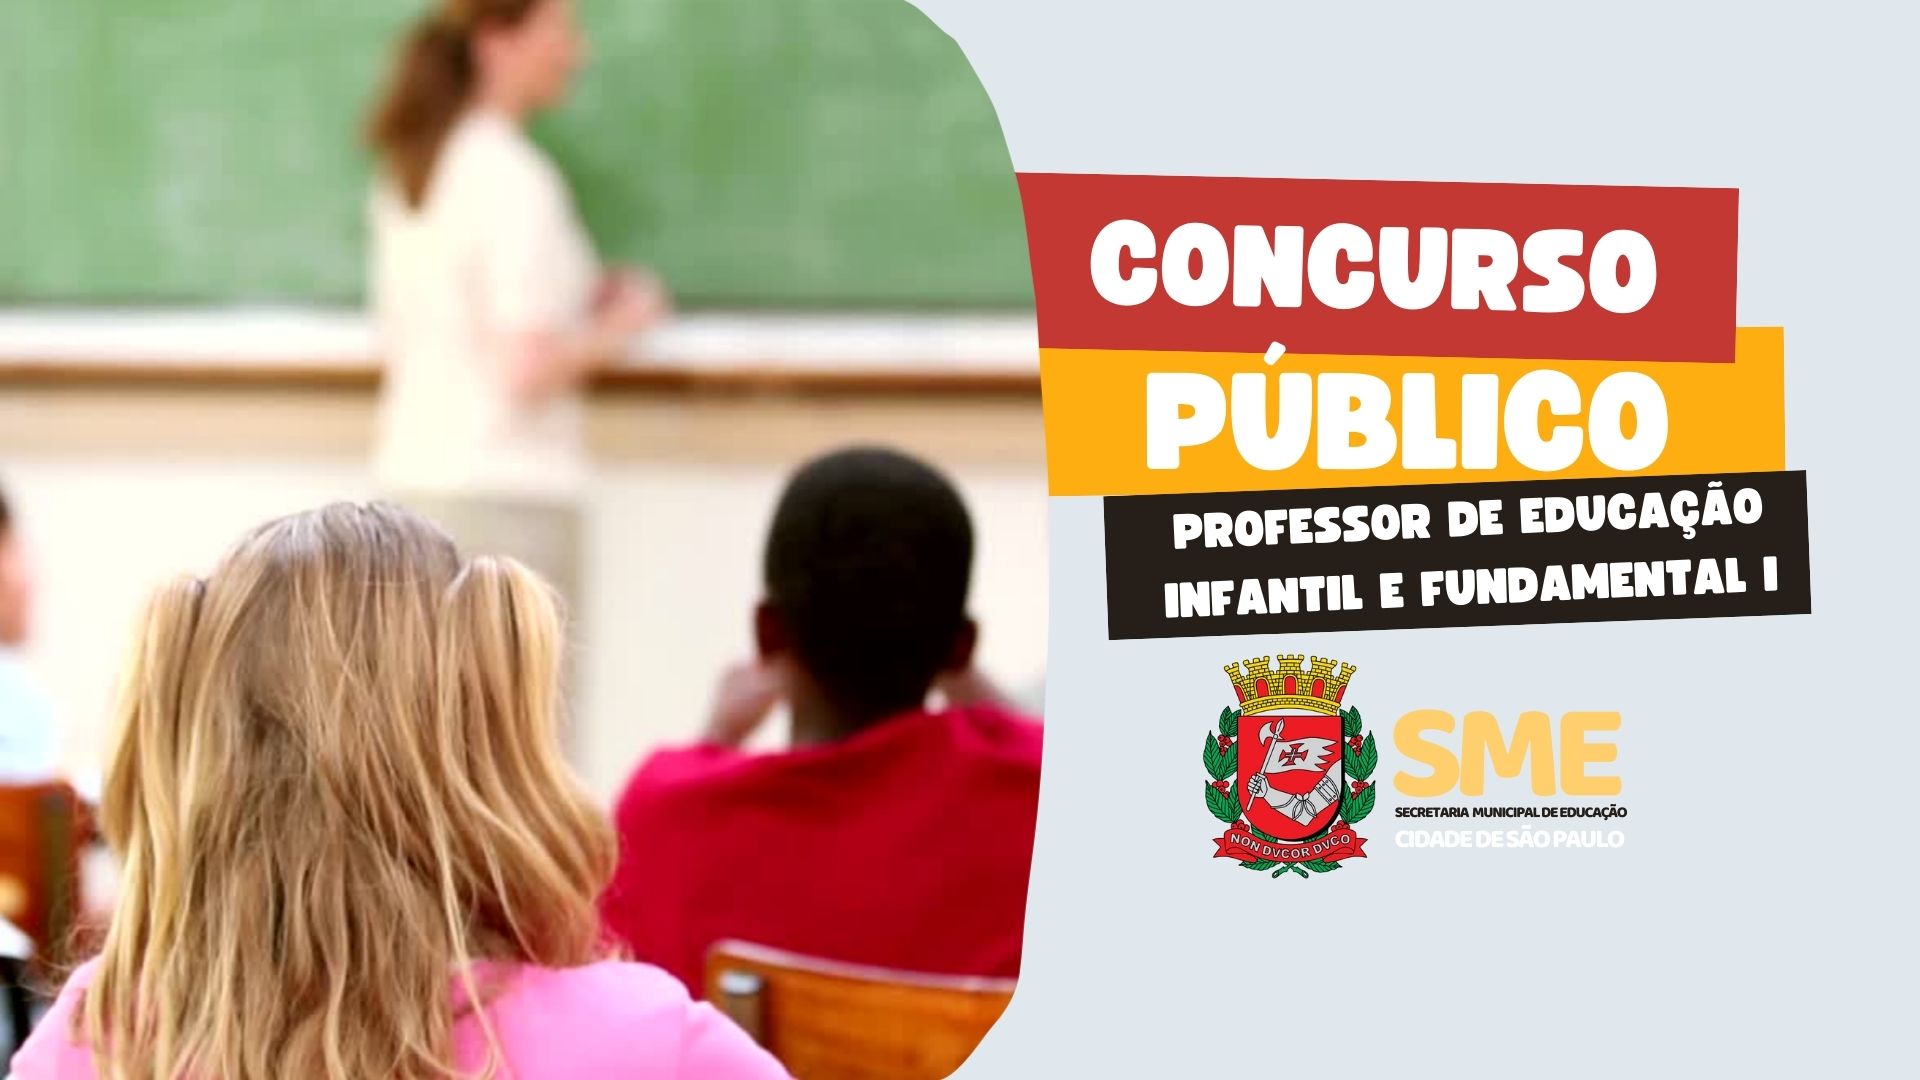 Prefeitura de São Paulo abre dois novos concursos para professores –  Ipiranga News